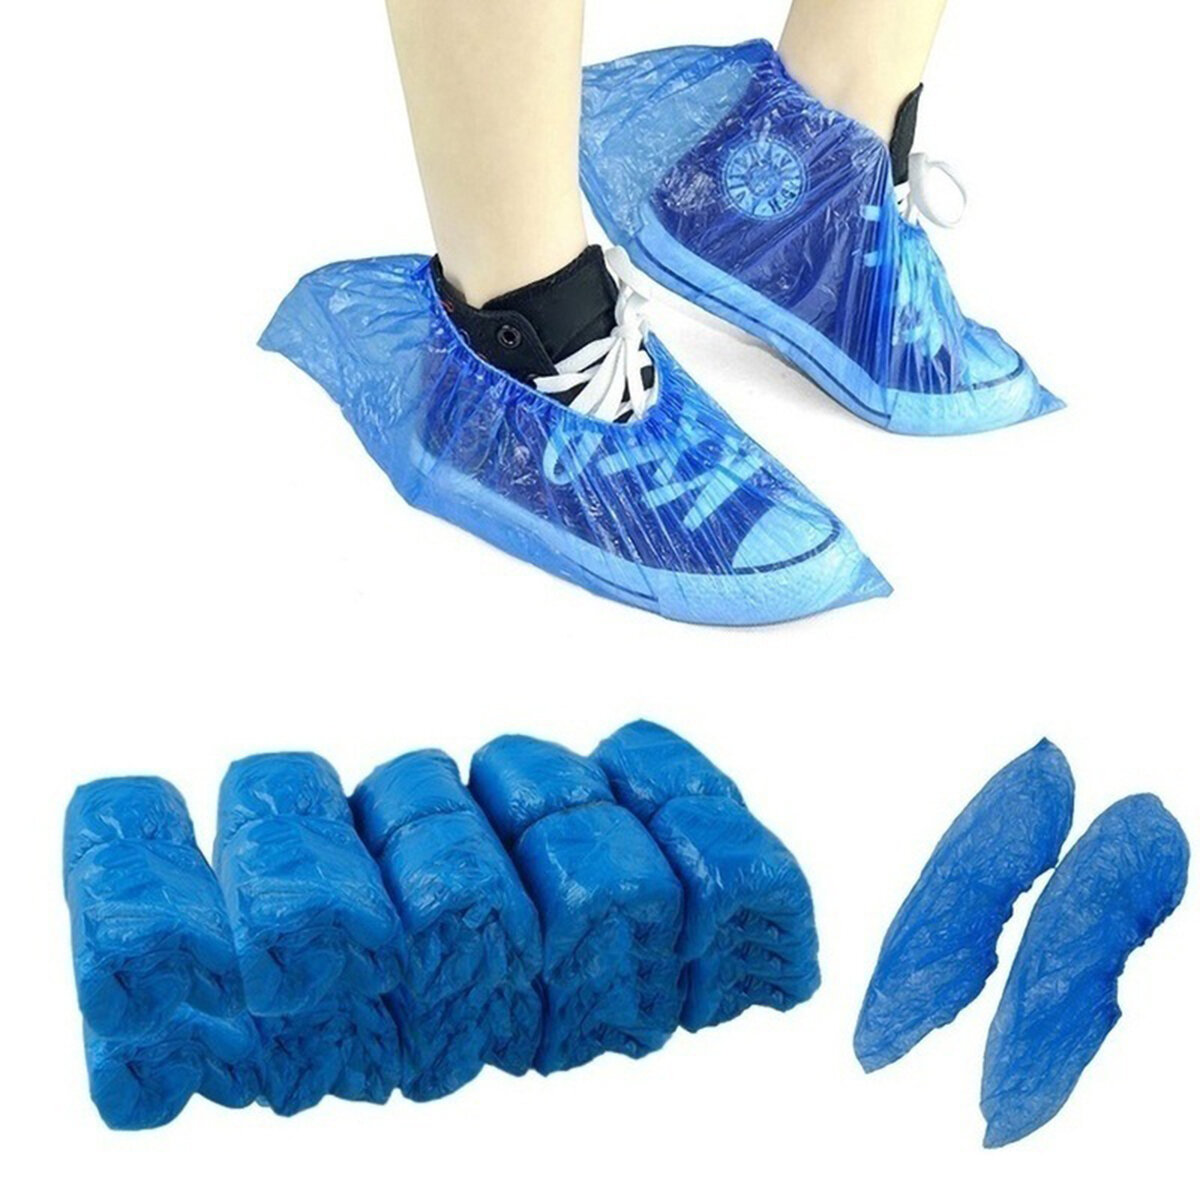 100 piezas de calzado desechables Impermeable Protector antideslizante y duradero